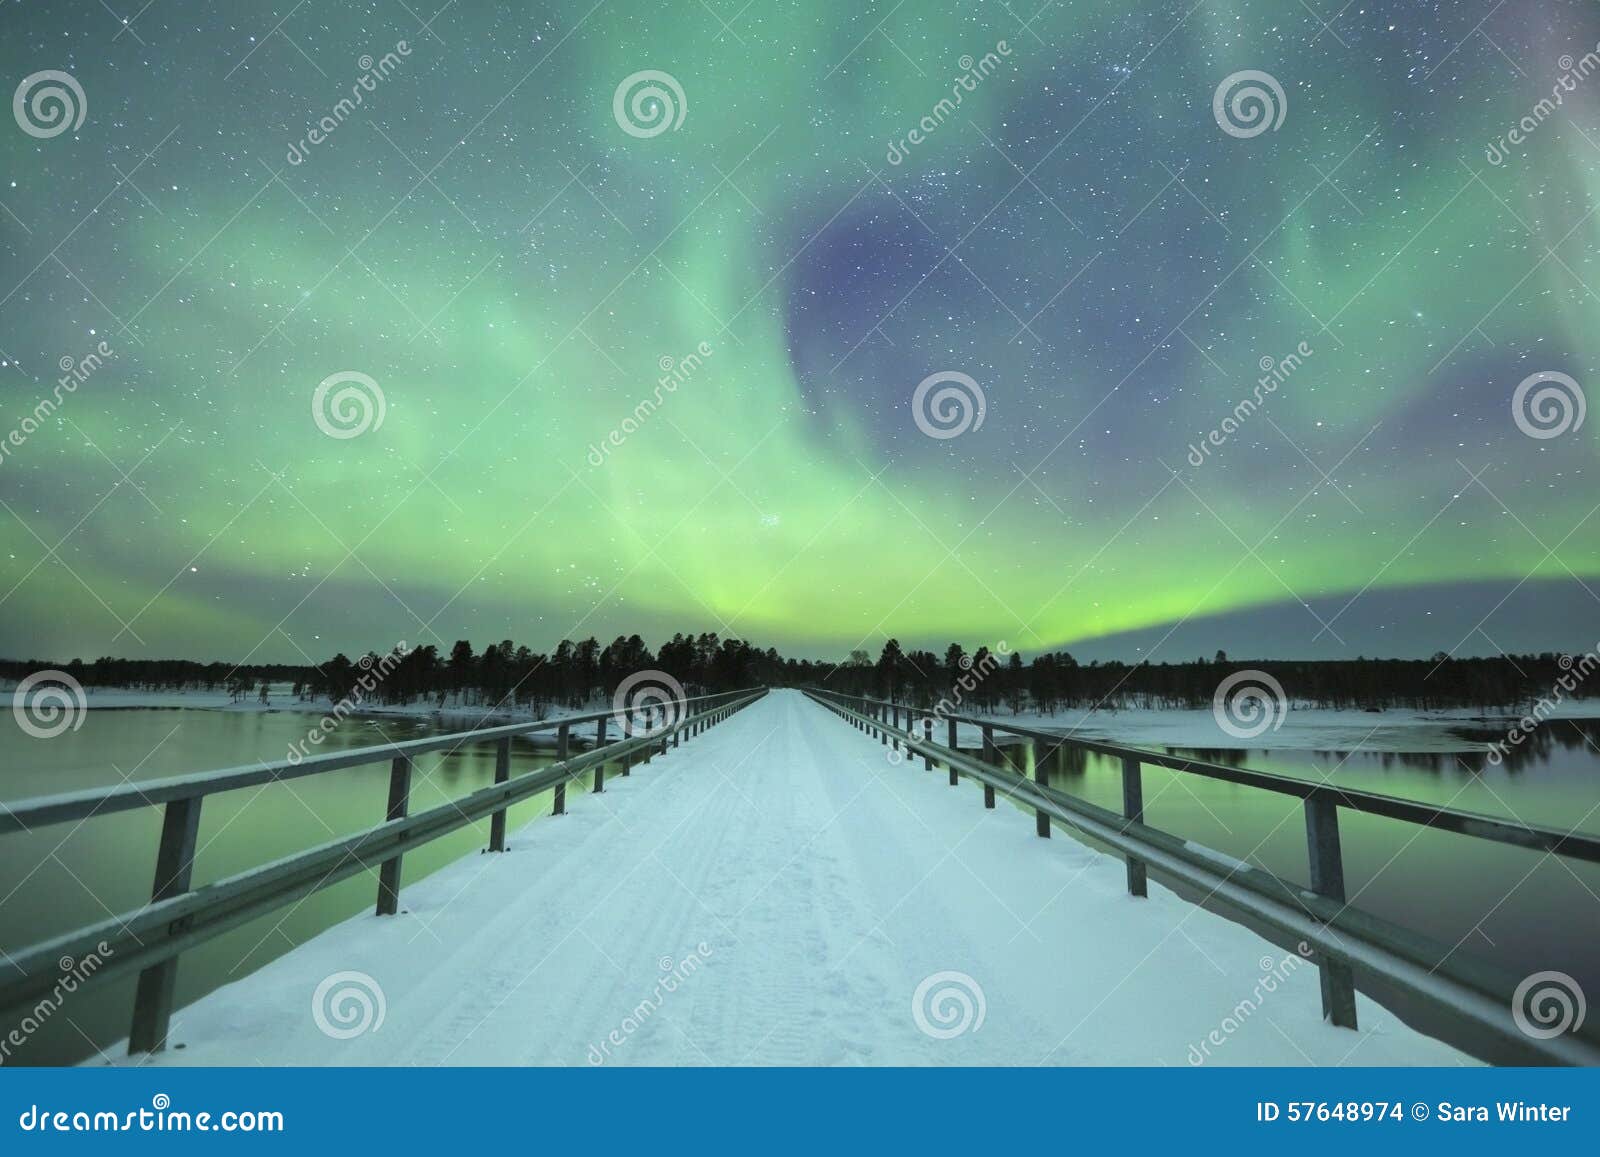 aurora borealis over a bridge in winter, finnish lapland